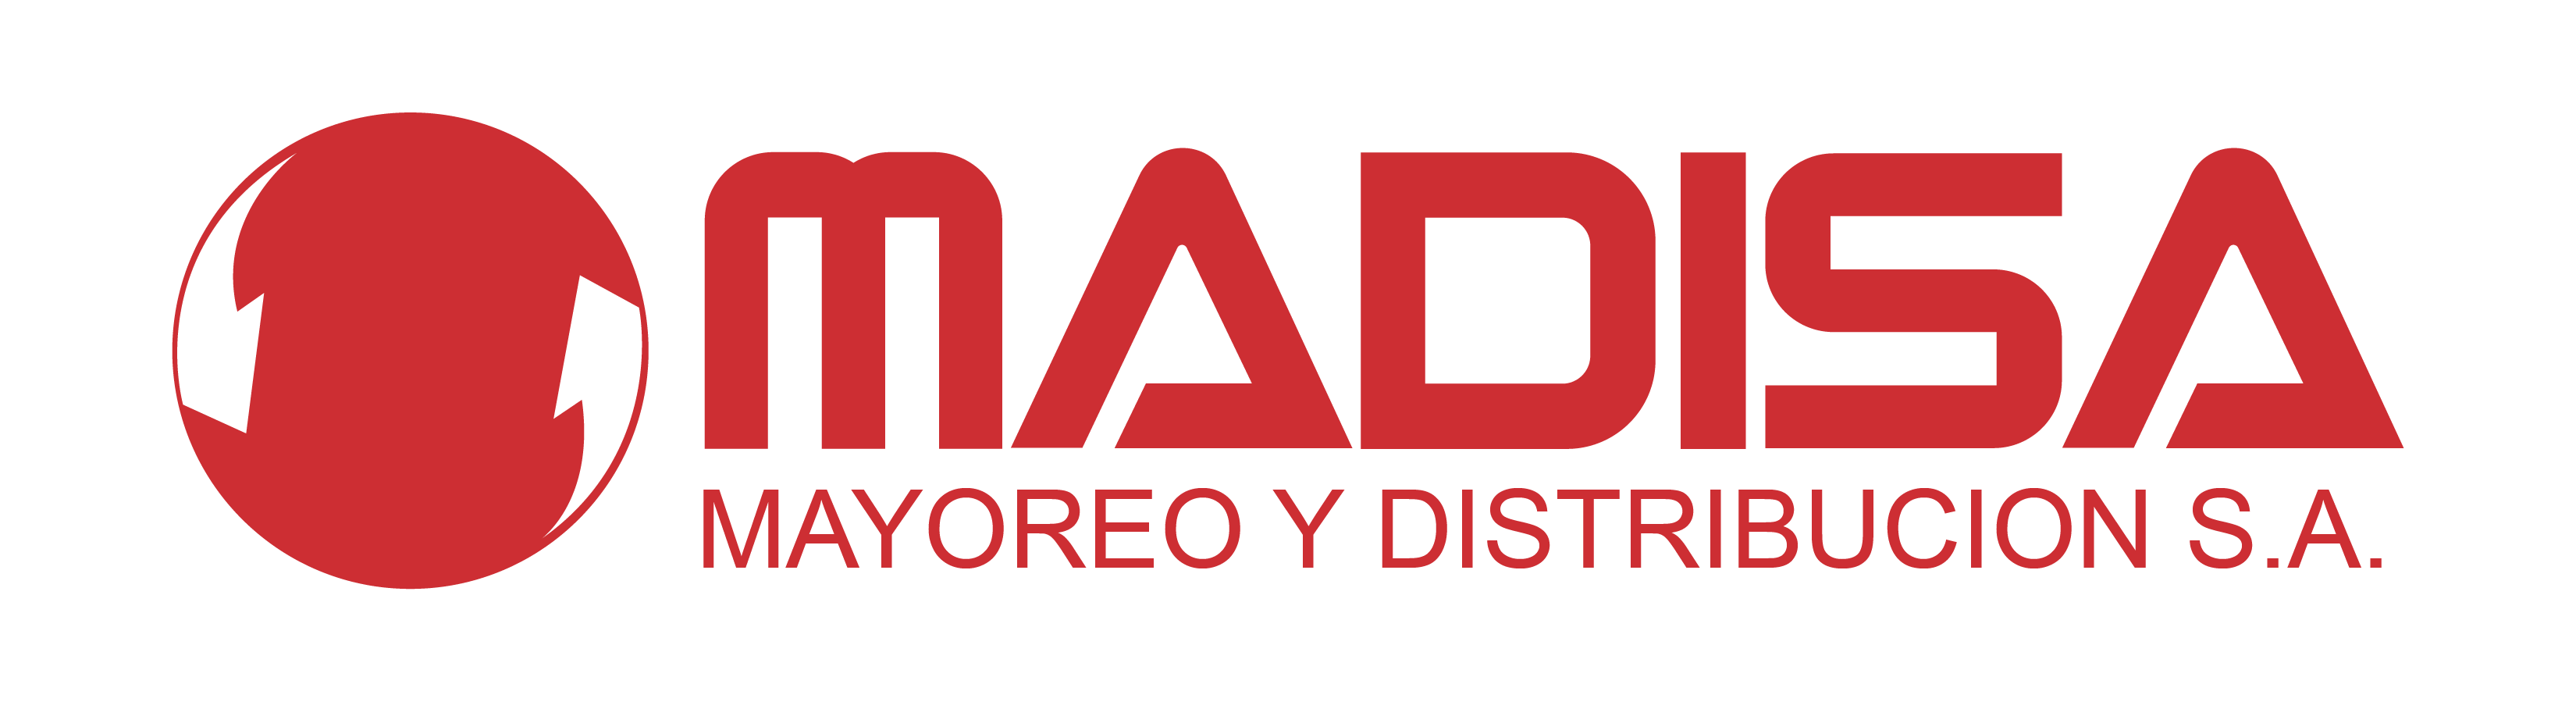 logo_madisa 01 1 